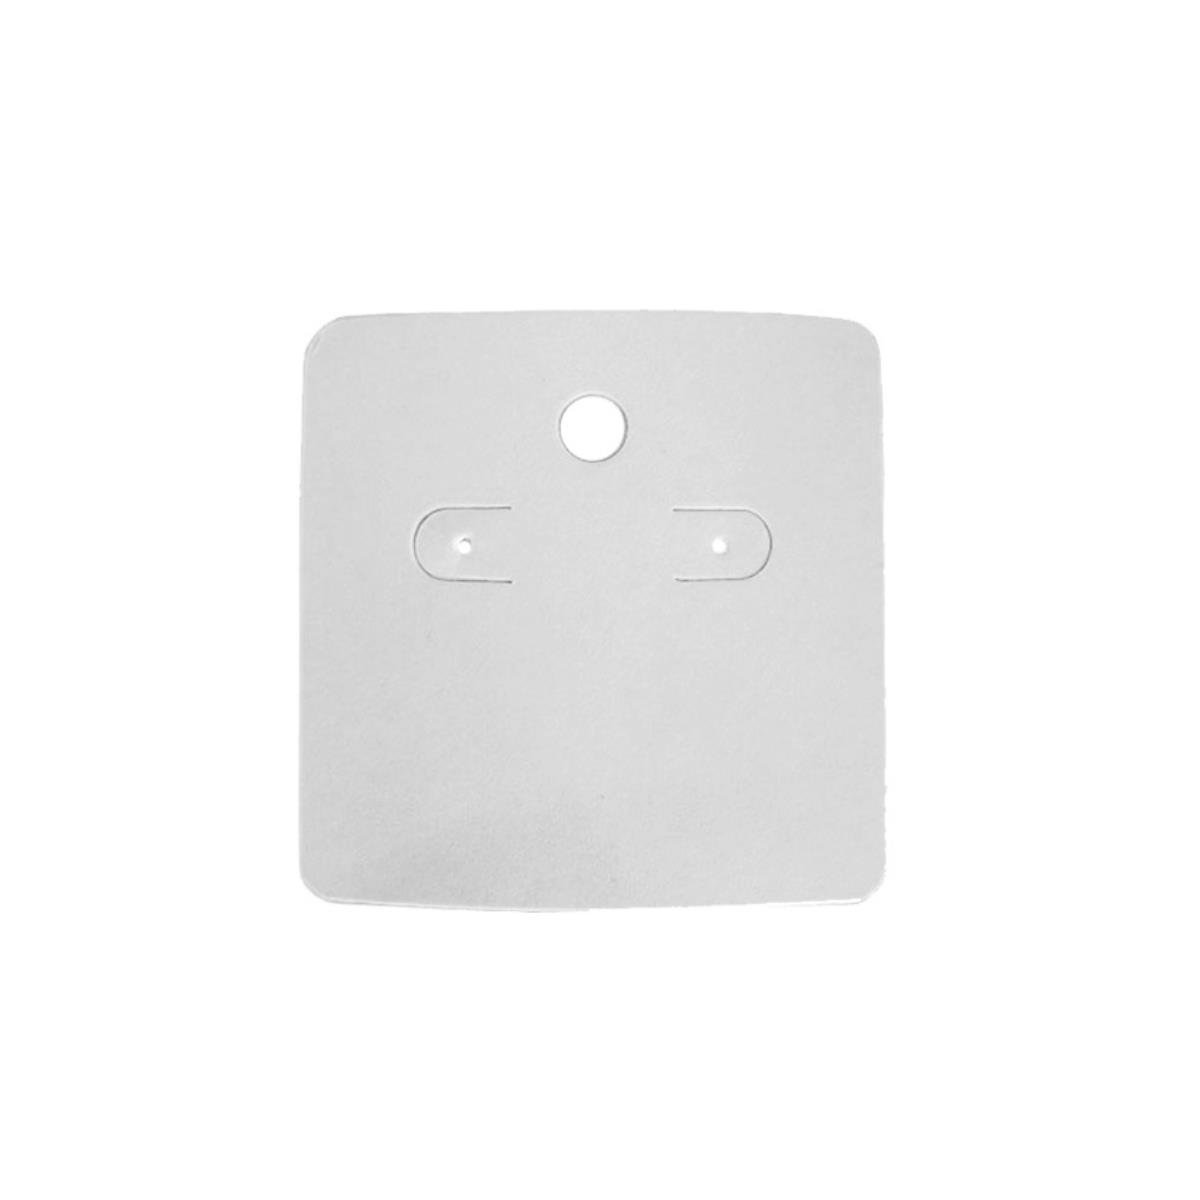 Cartela Para Brinco 5,5X5,5 cm Quadrada Pct 100 - Branco